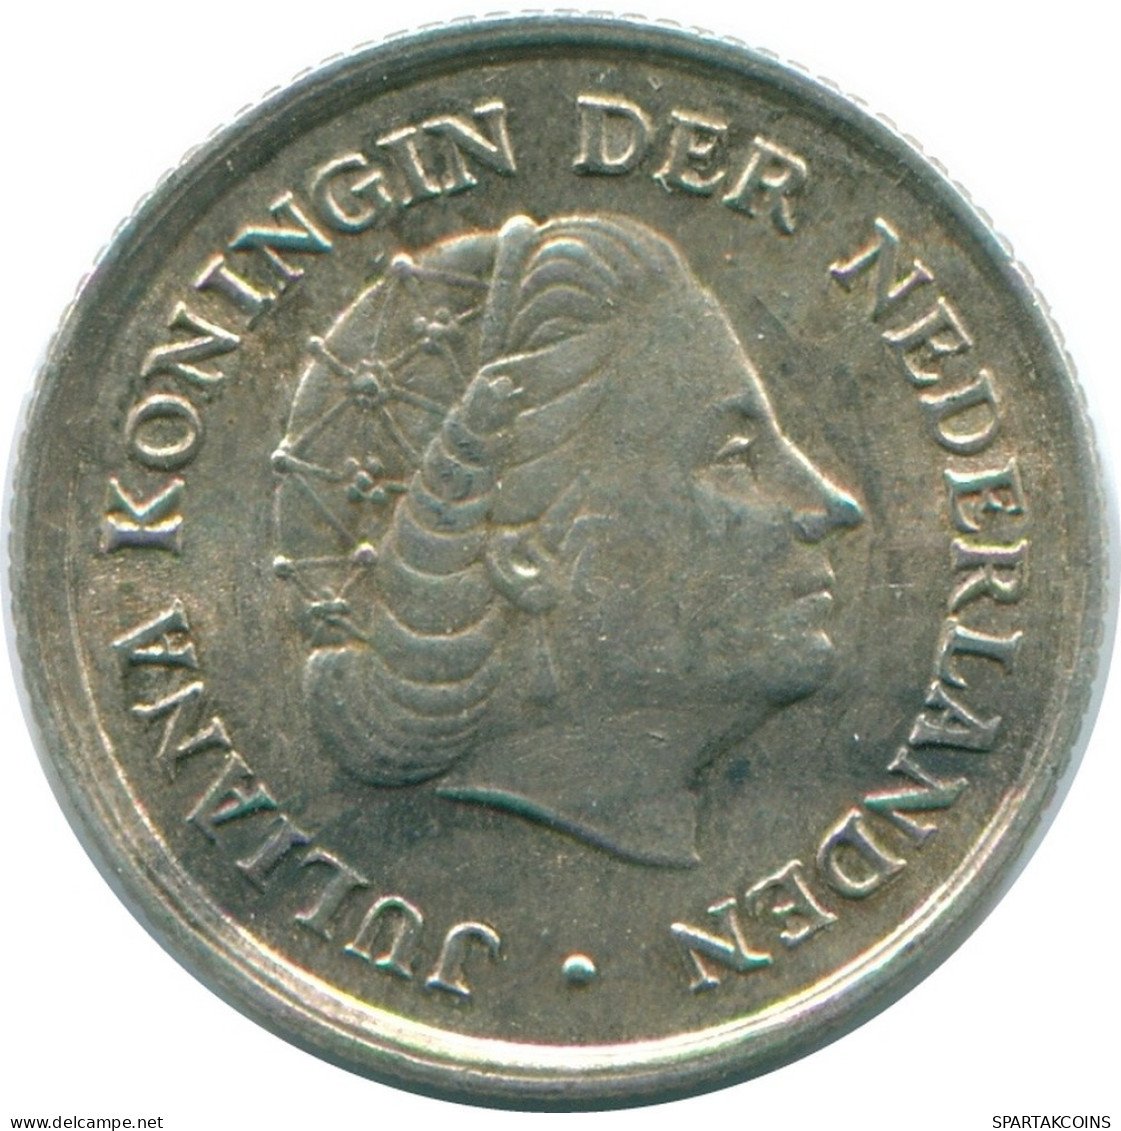 1/10 GULDEN 1966 NIEDERLÄNDISCHE ANTILLEN SILBER Koloniale Münze #NL12819.3.D.A - Antilles Néerlandaises